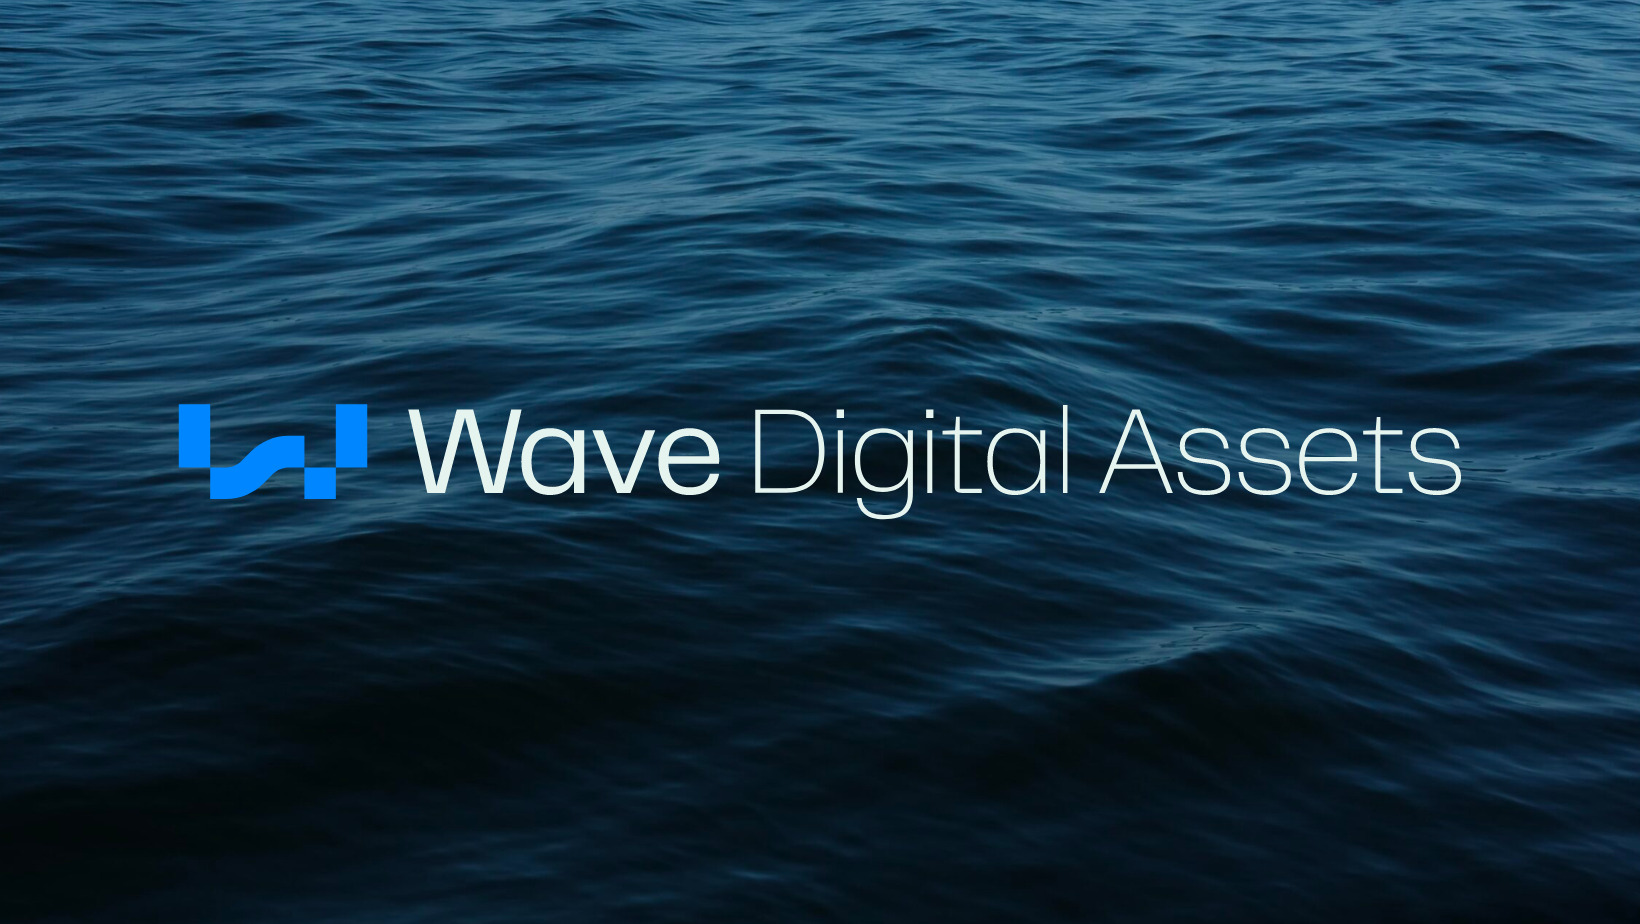 SEC Registered ‘Wave Financial’ Changes Name to ‘Wave Digital Assets’